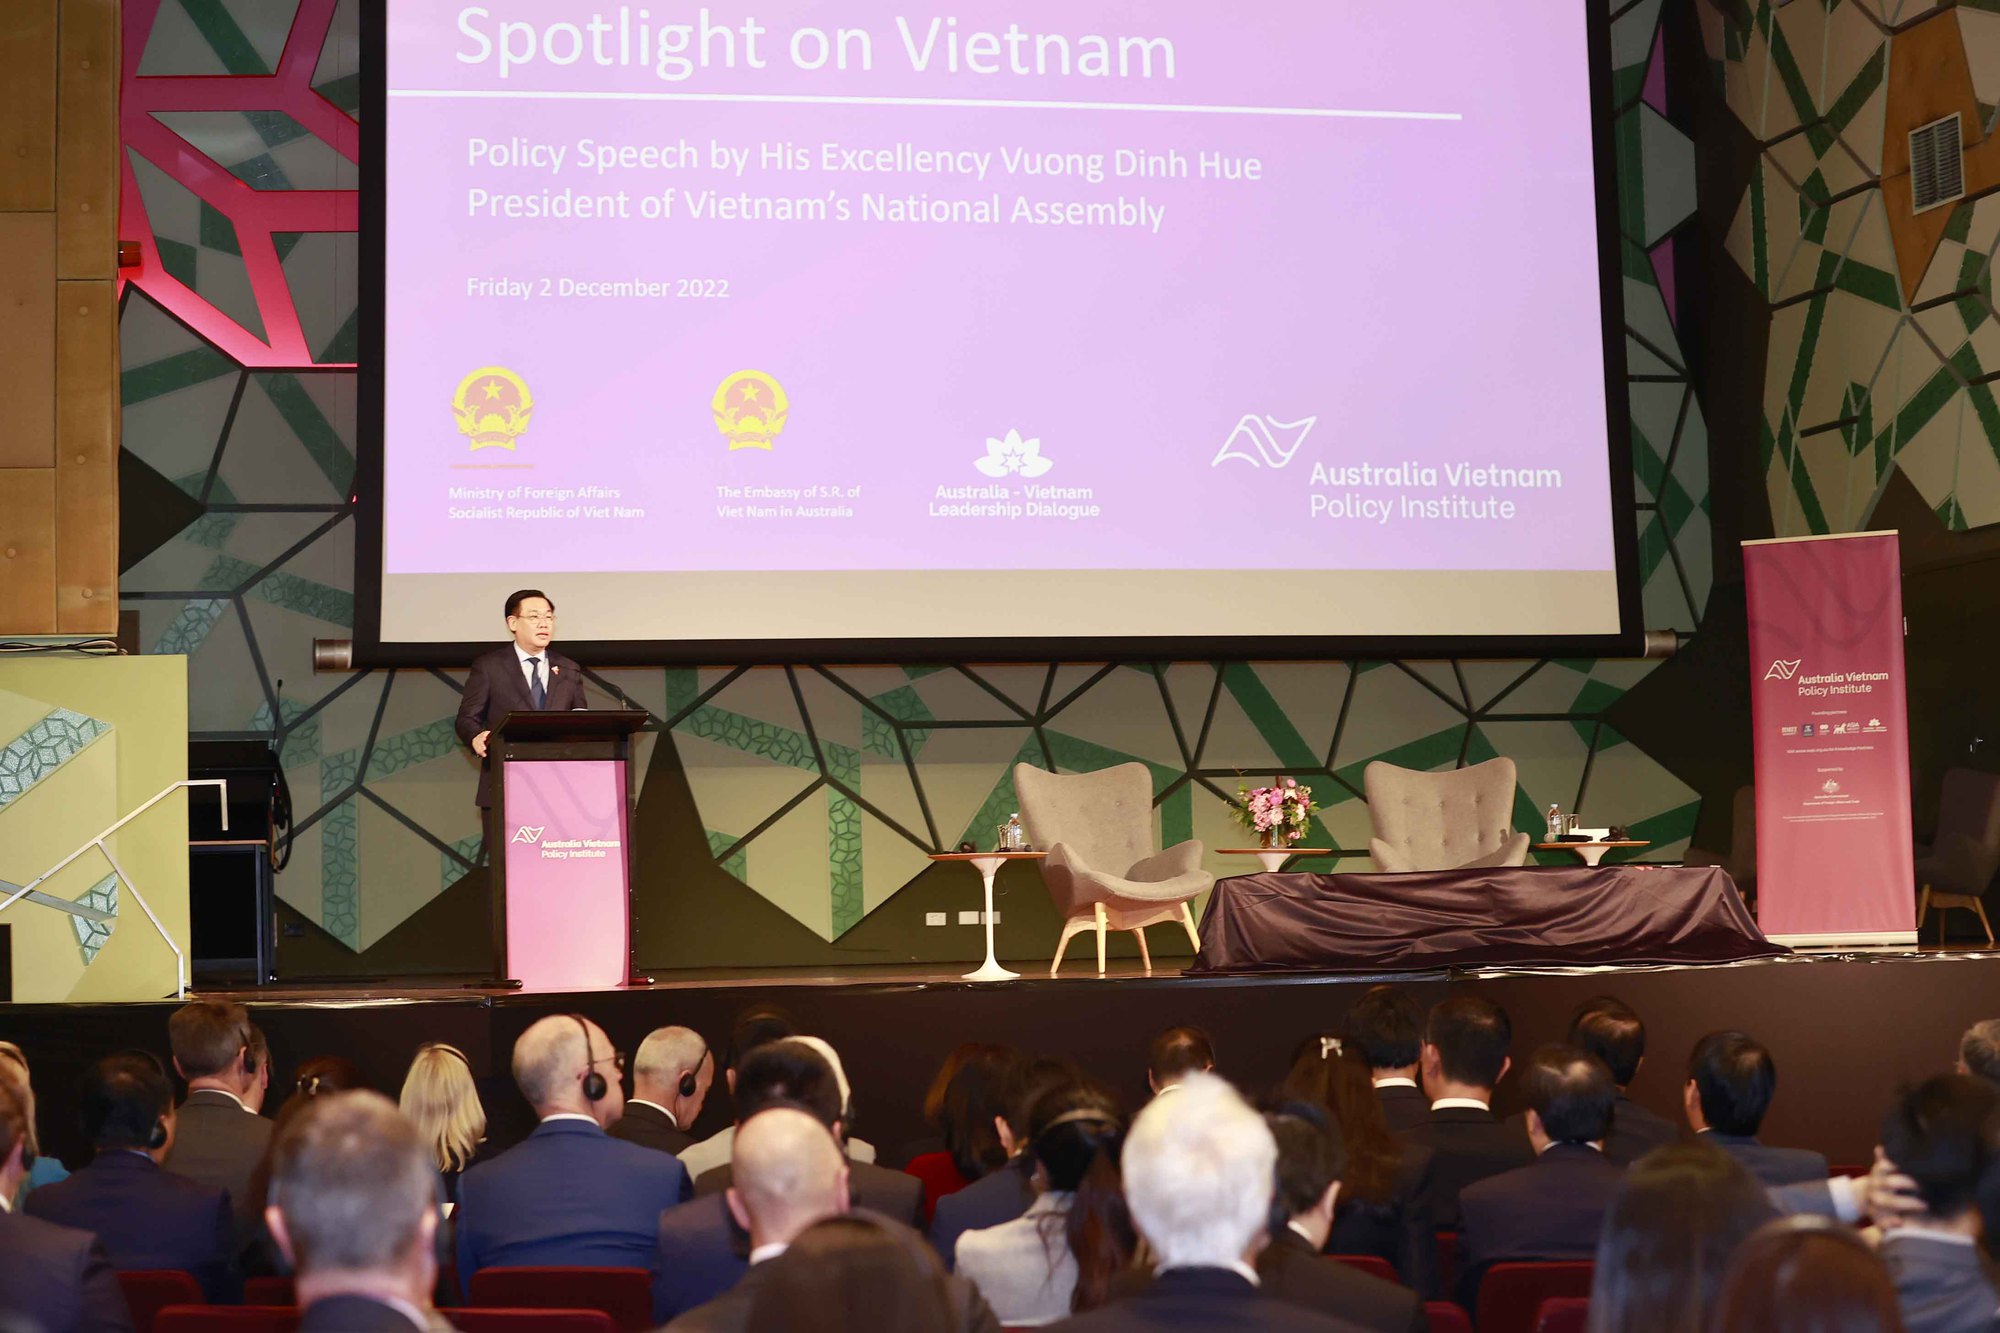 Chủ tịch Quốc hội Vương Đình Huệ: Việt Nam - Australia cần làm sâu sắc hơn hợp tác chiến lược, quốc phòng và an ninh - Ảnh 1.